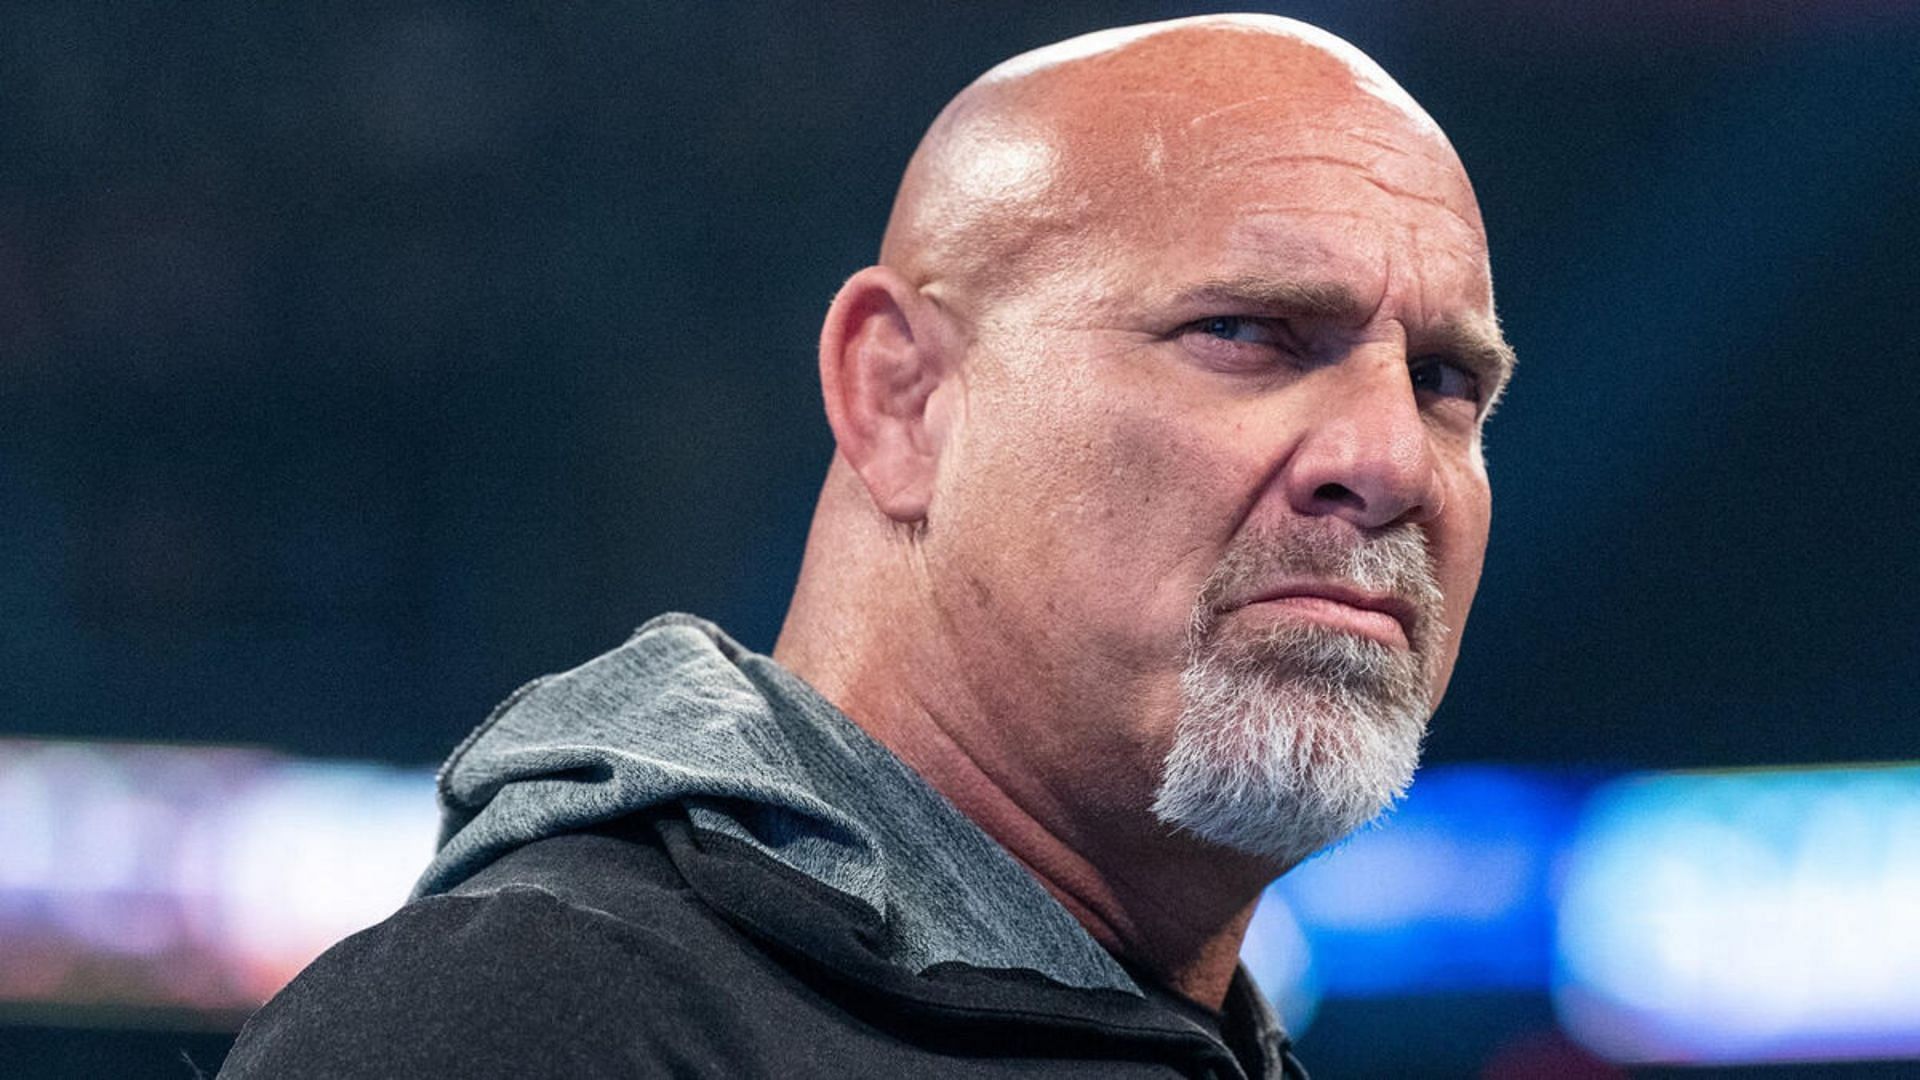 WWE Hall of Famer Goldberg last wrestled in 2022